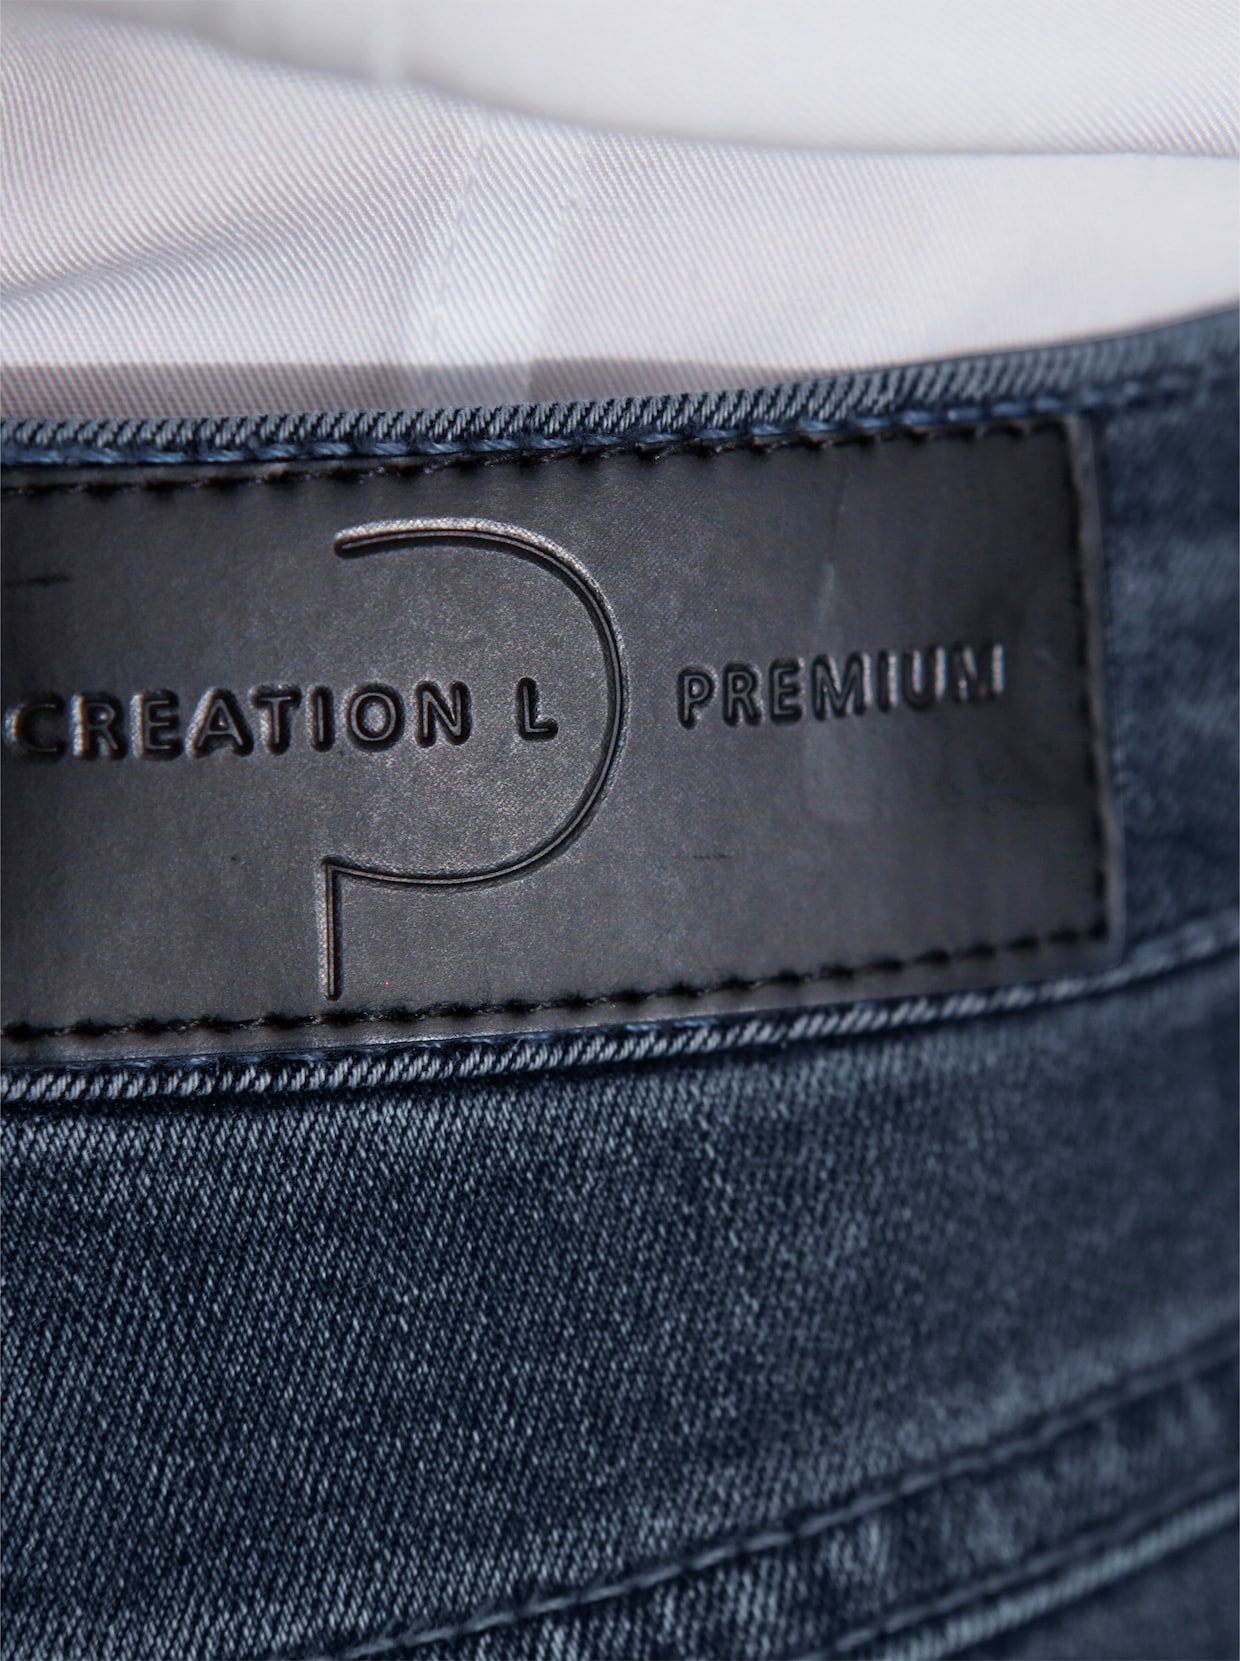 CREATION L PREMIUM Chique jeans - blue-stonewashed